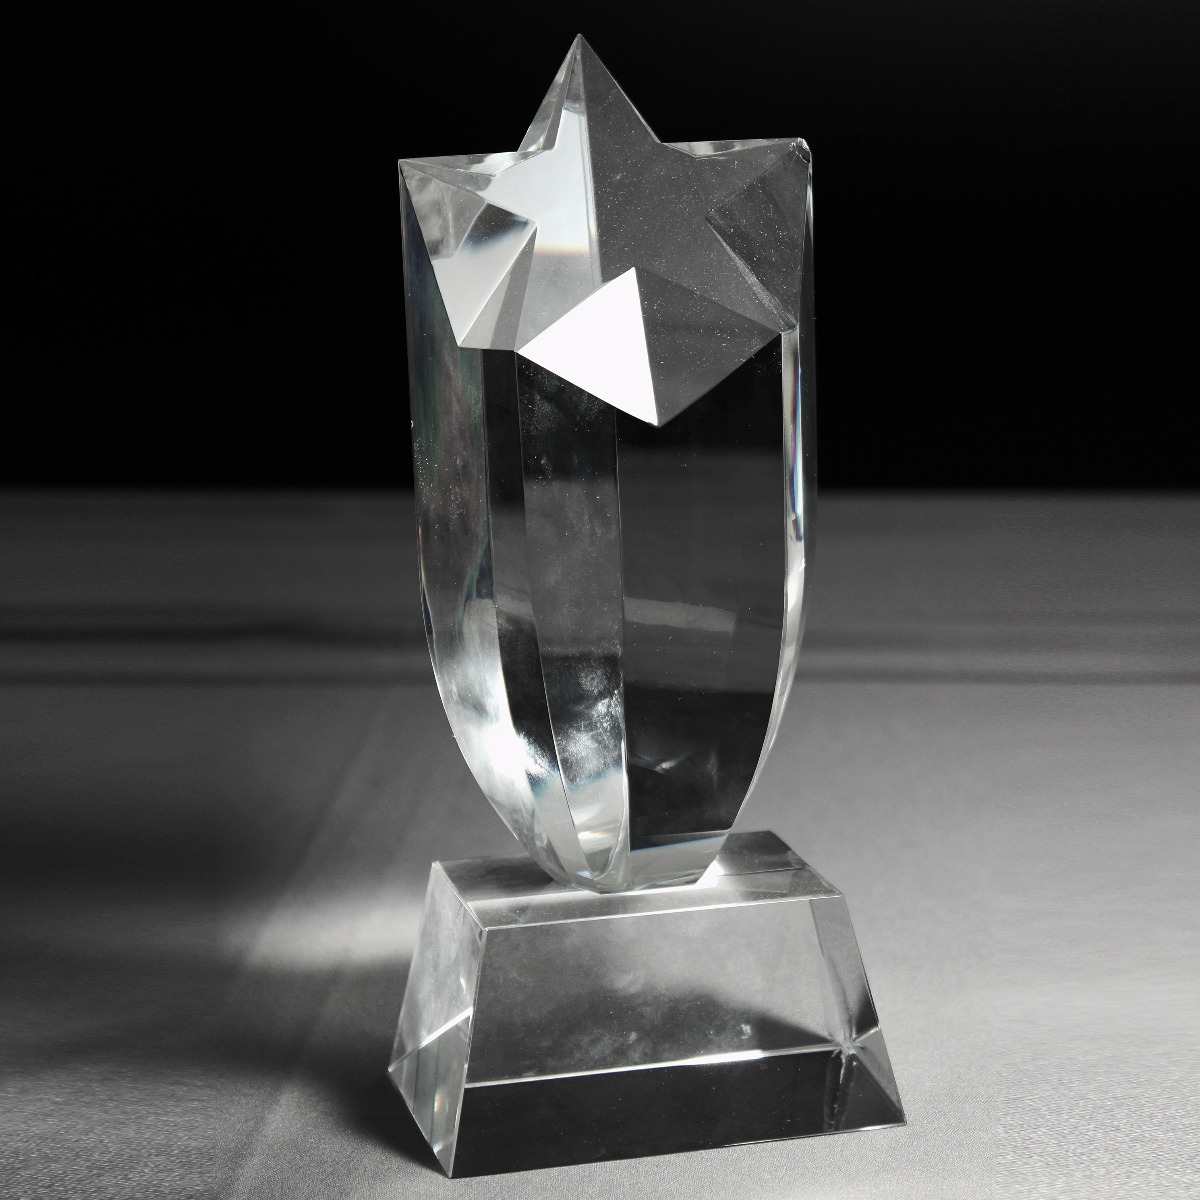 Custom crystal award with multiple faces and star shape award